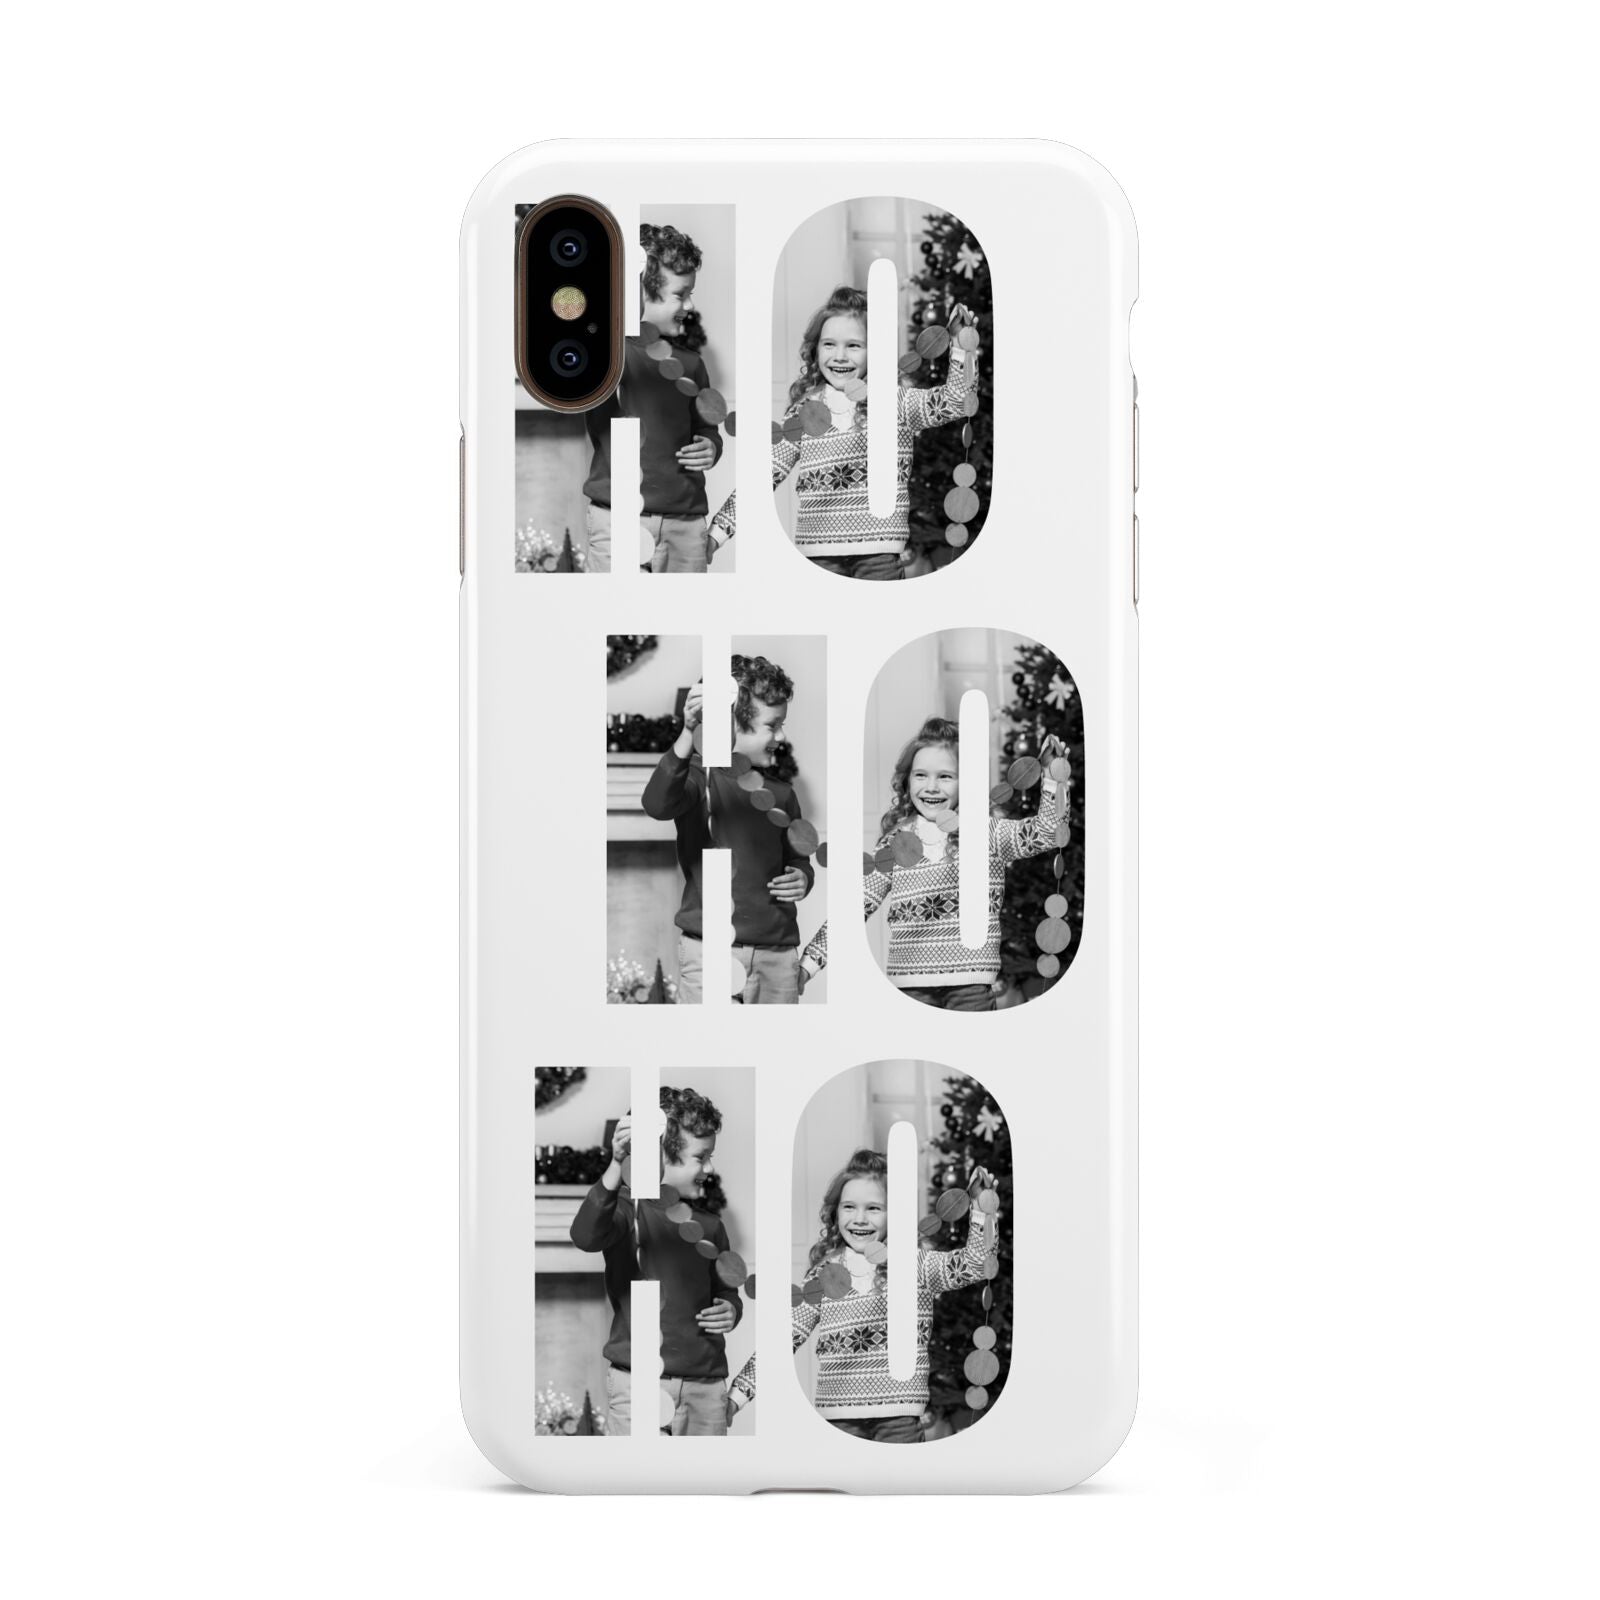 Ho Ho Ho Photo Upload Christmas Apple iPhone Xs Max 3D Tough Case